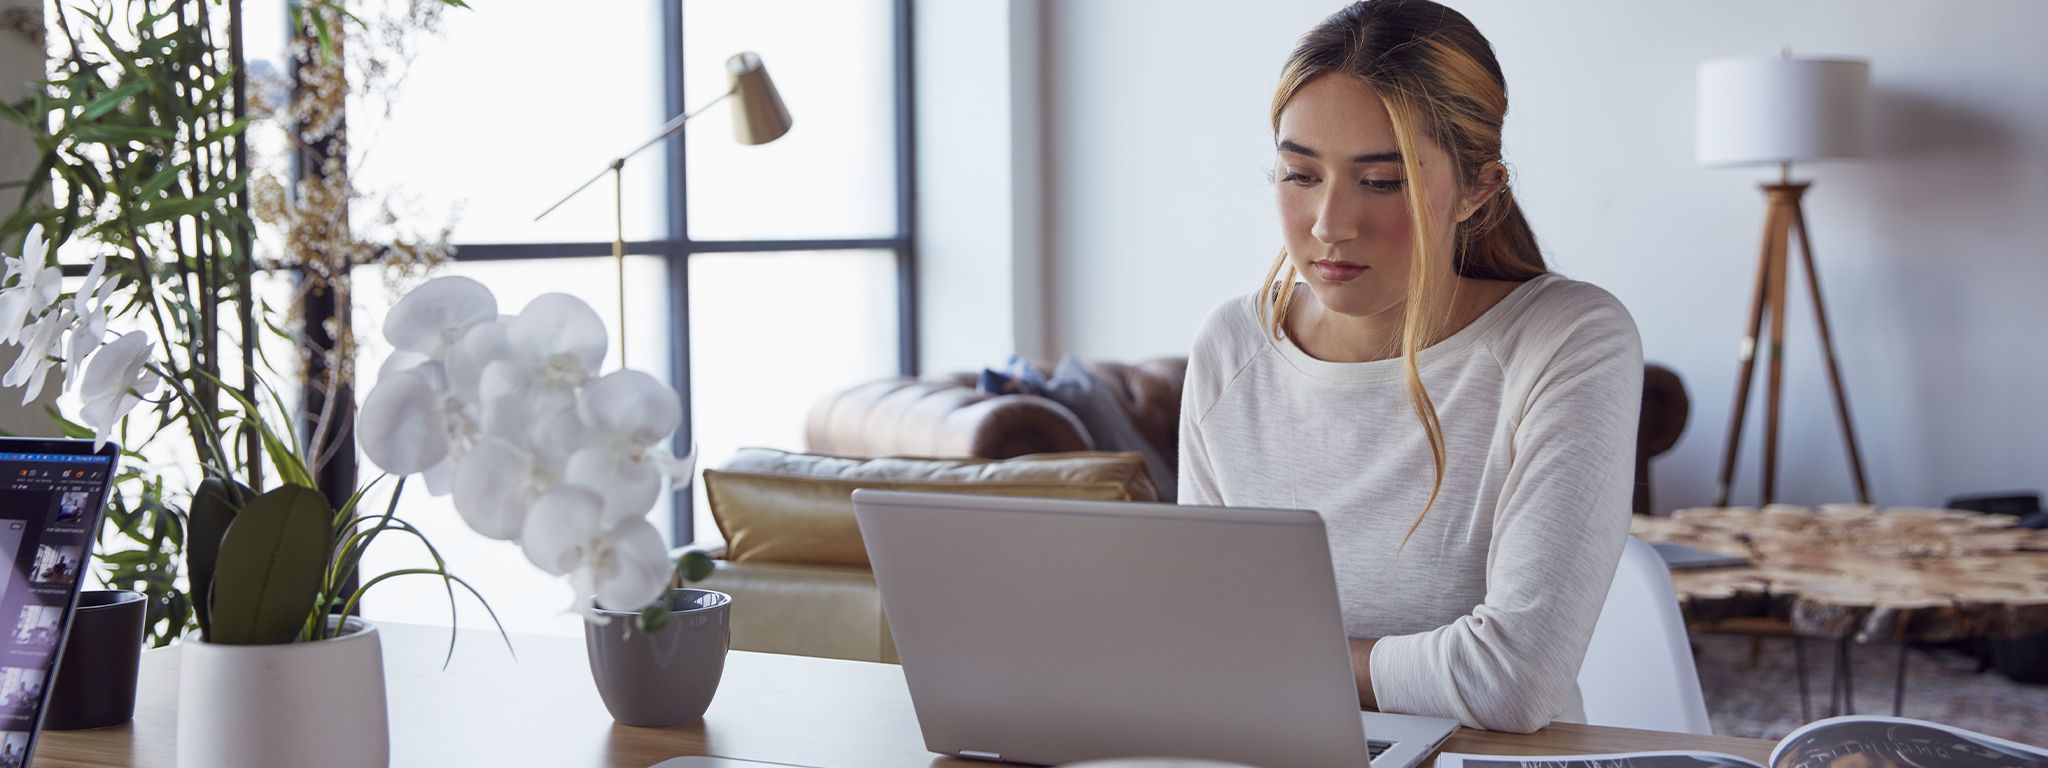 Une fille à la maison, assise à une table et travaillant sur son ordinateur portable